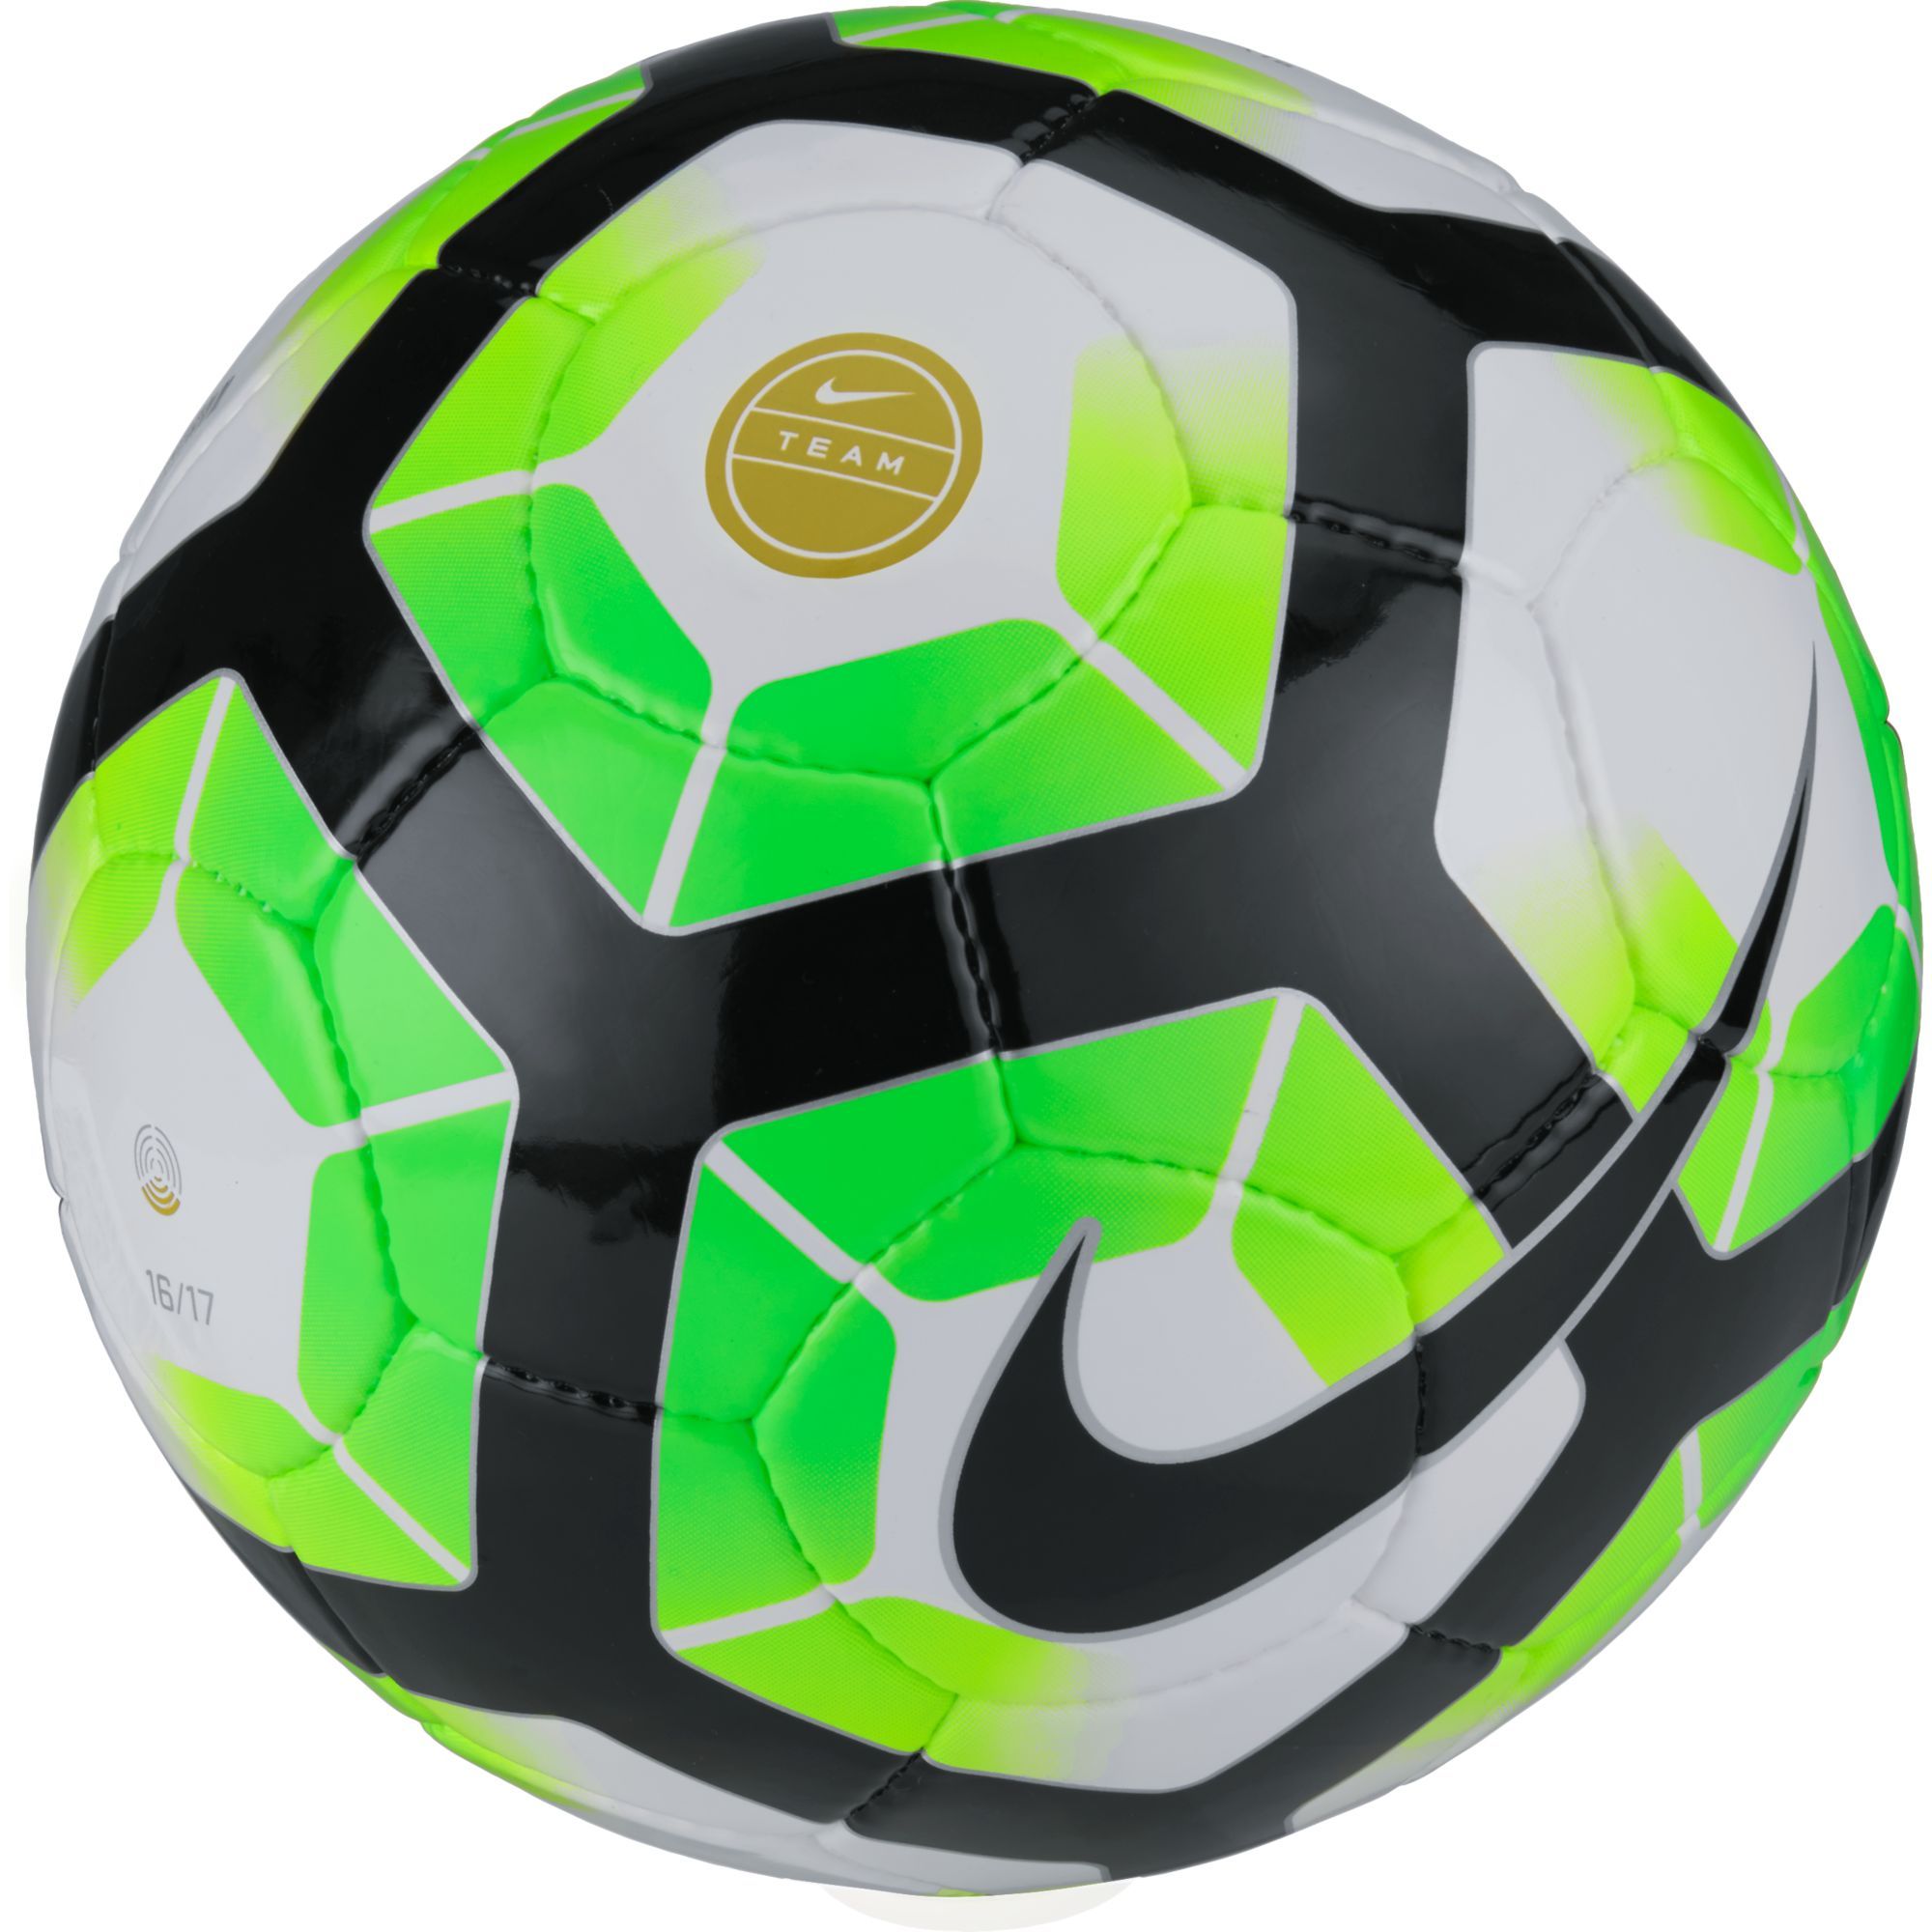 Balón oficial premier league 16-17